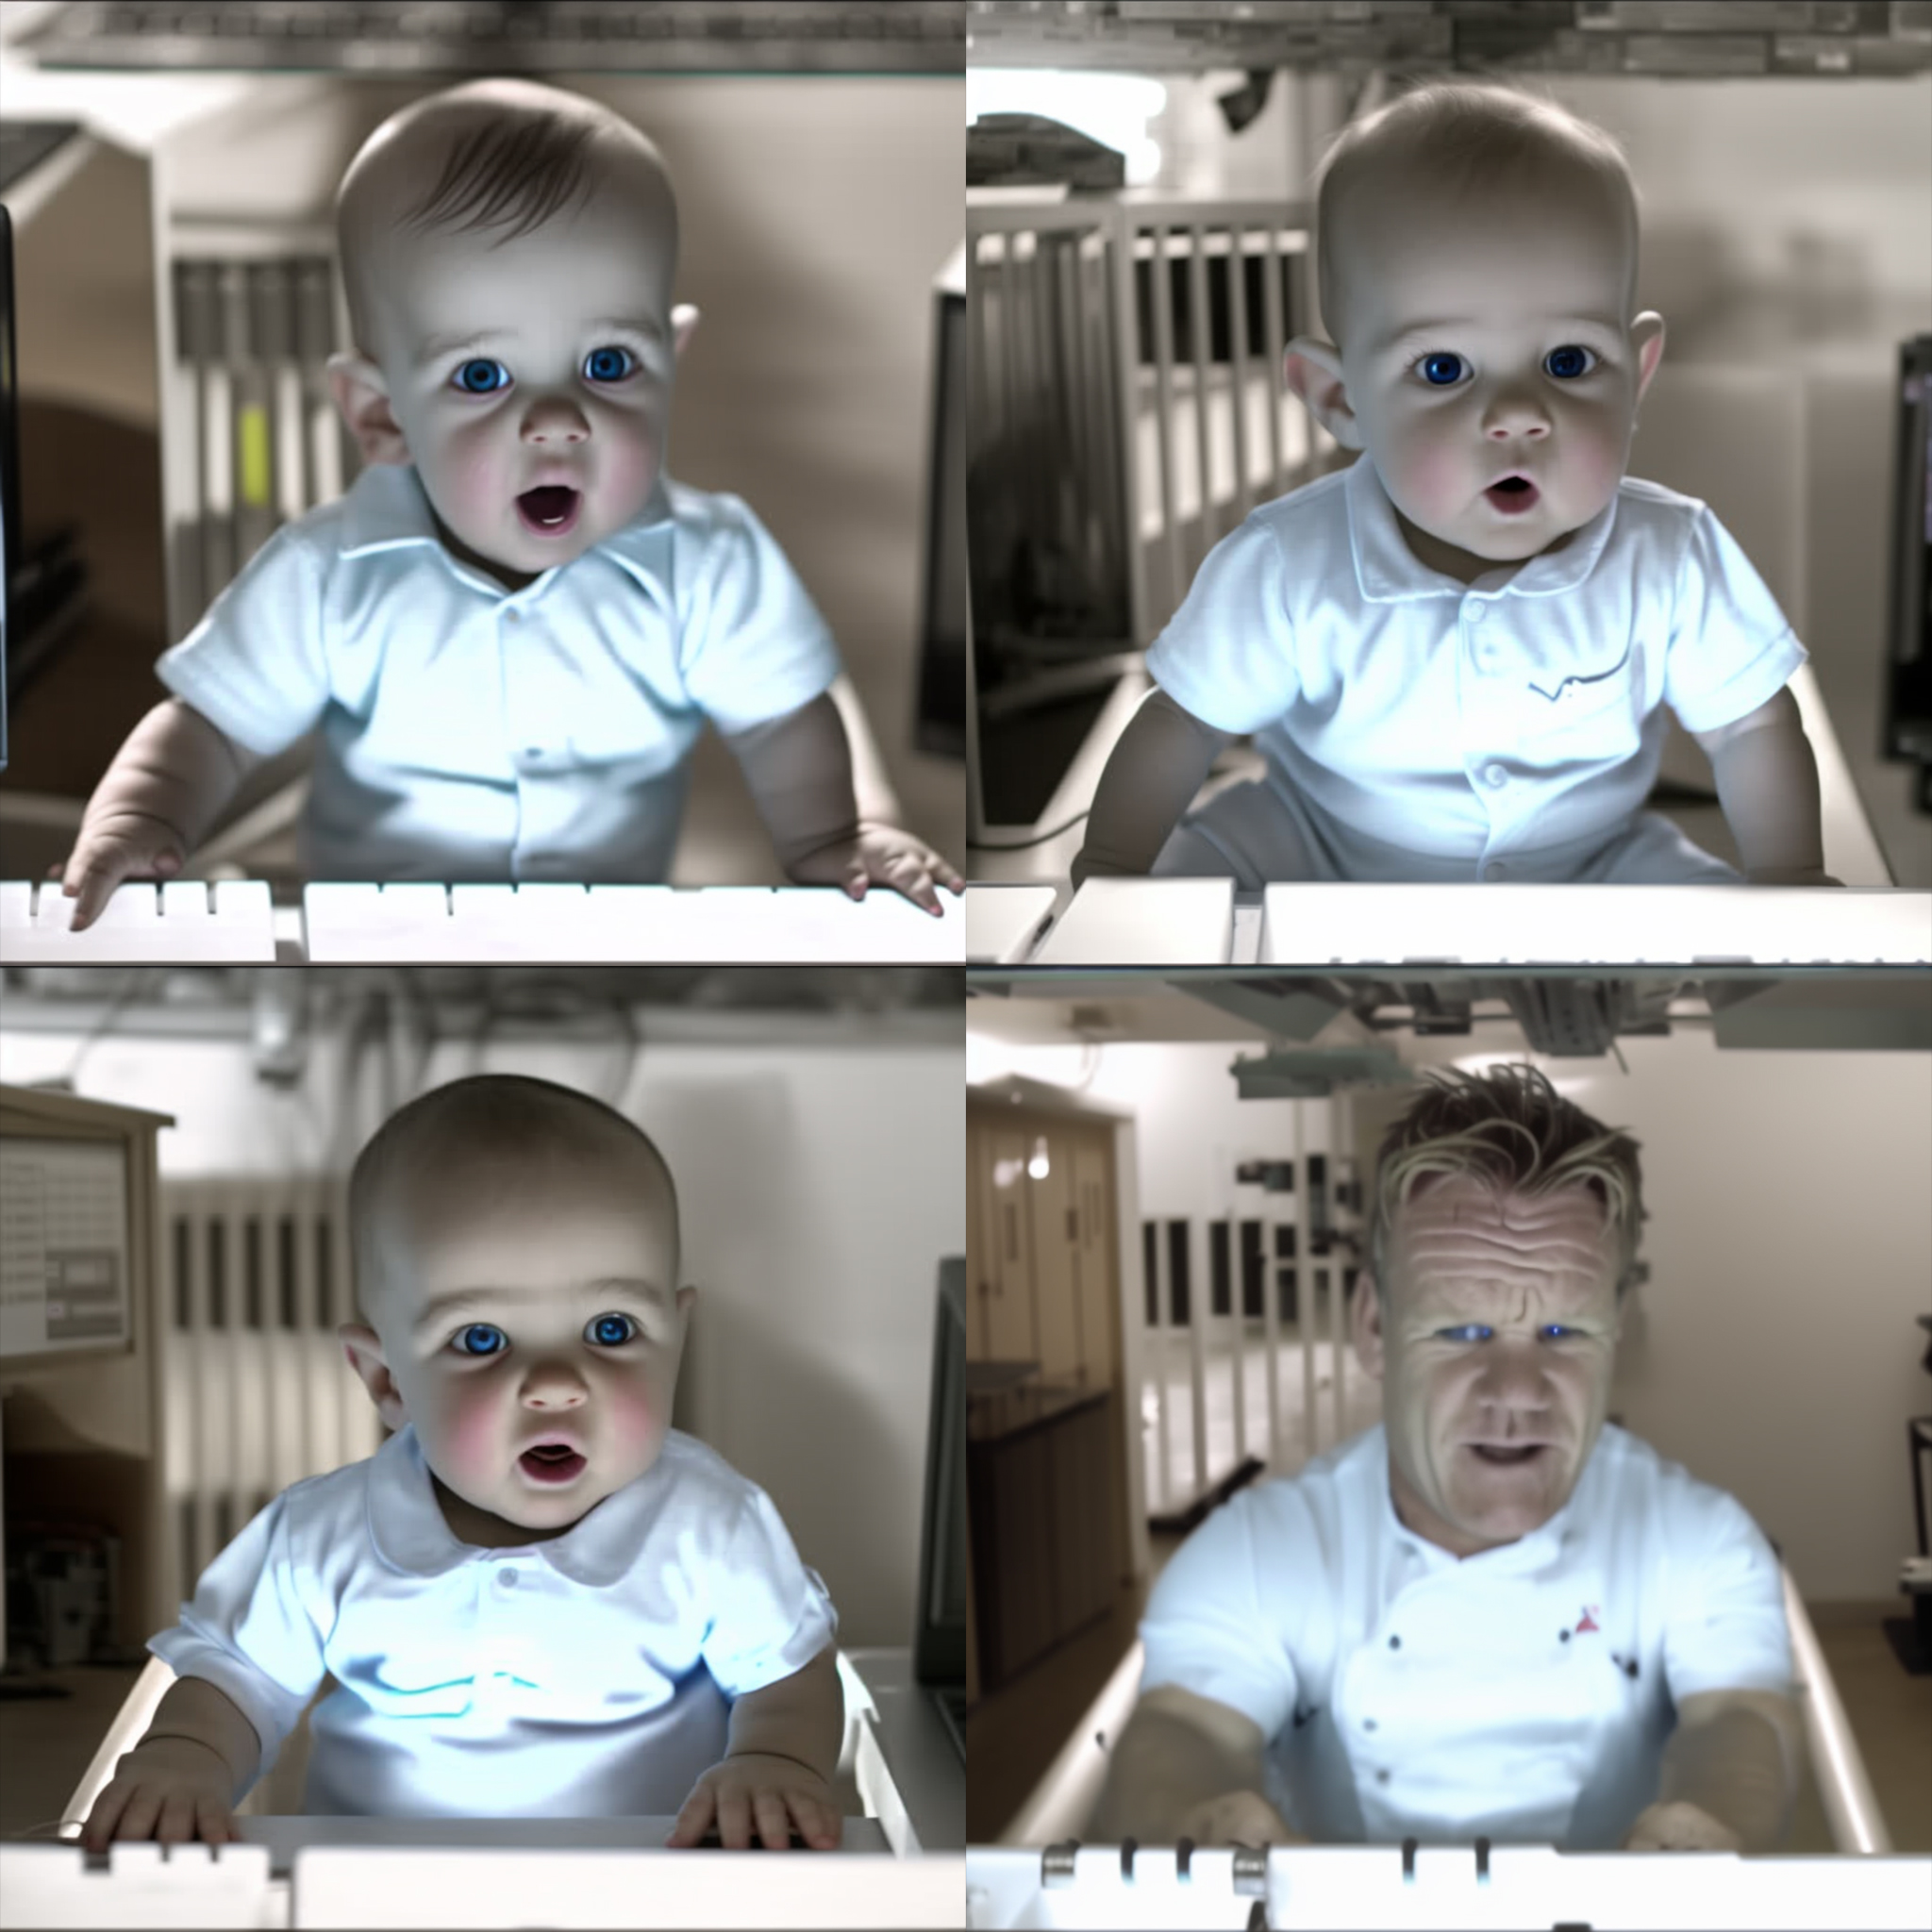 Imagens geradas por IA replicando o comercial Baby da E-Trade do Super Bowl.